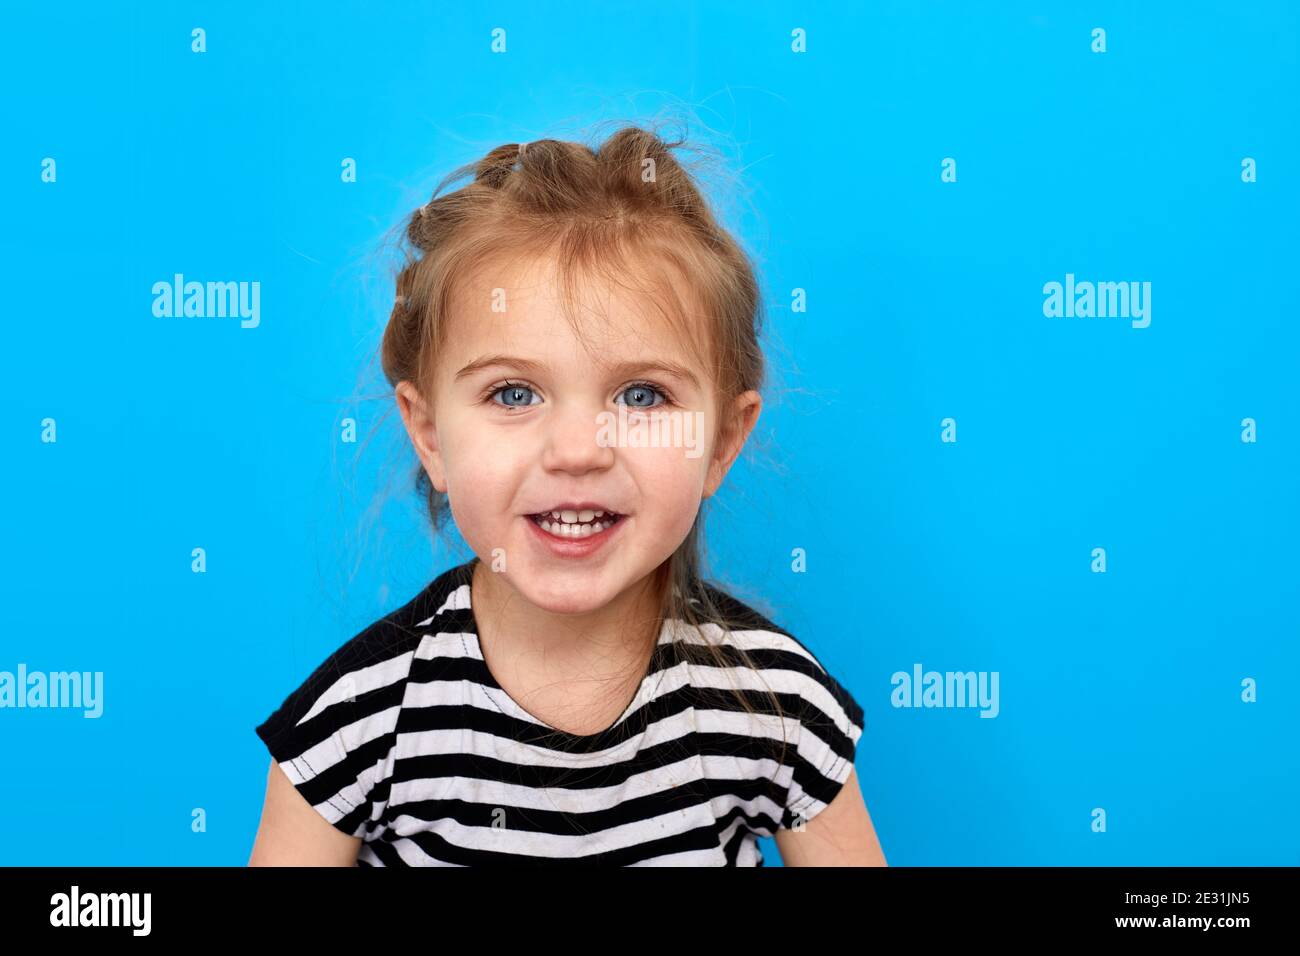 Nahaufnahme eines kleinen Mädchens im T-Shirt, das vor blauem Hintergrund posiert. Schaut auf die Kamera und lächelt Stockfoto